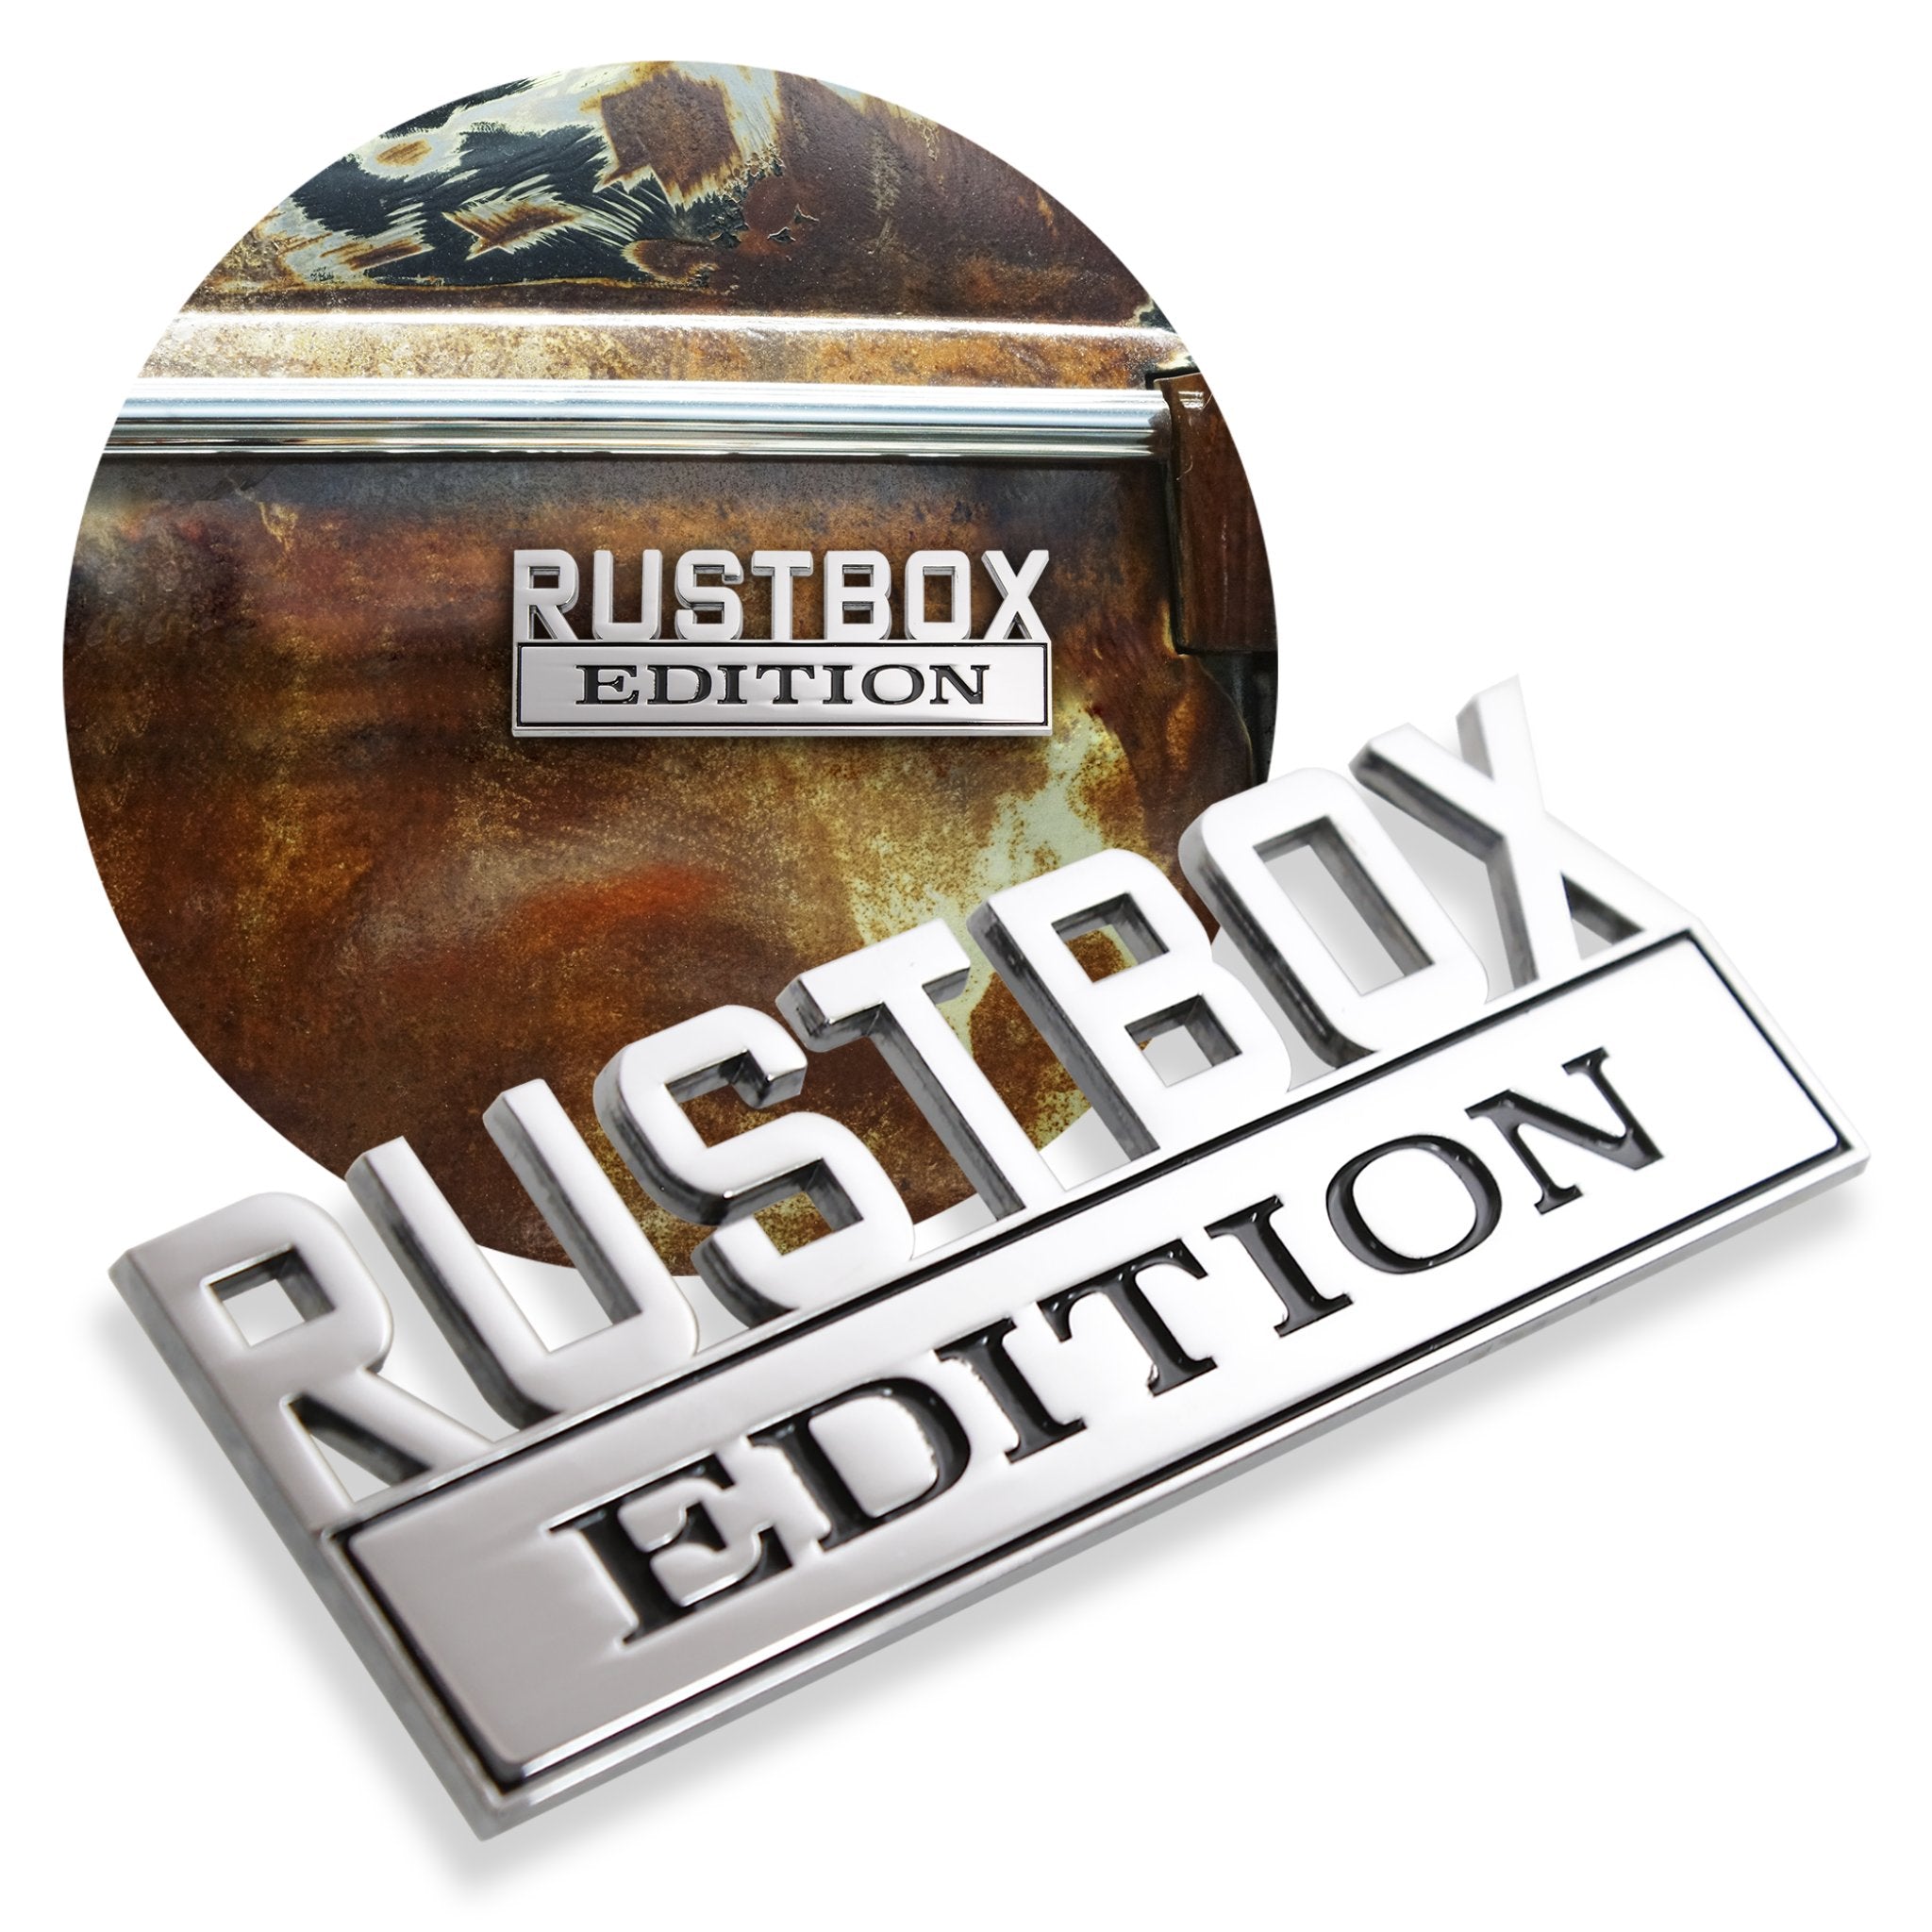 Emblema de guardabarros de edición Rustbox de Metal cromado, insignia personalizada para coche, camión, portón trasero, maletero